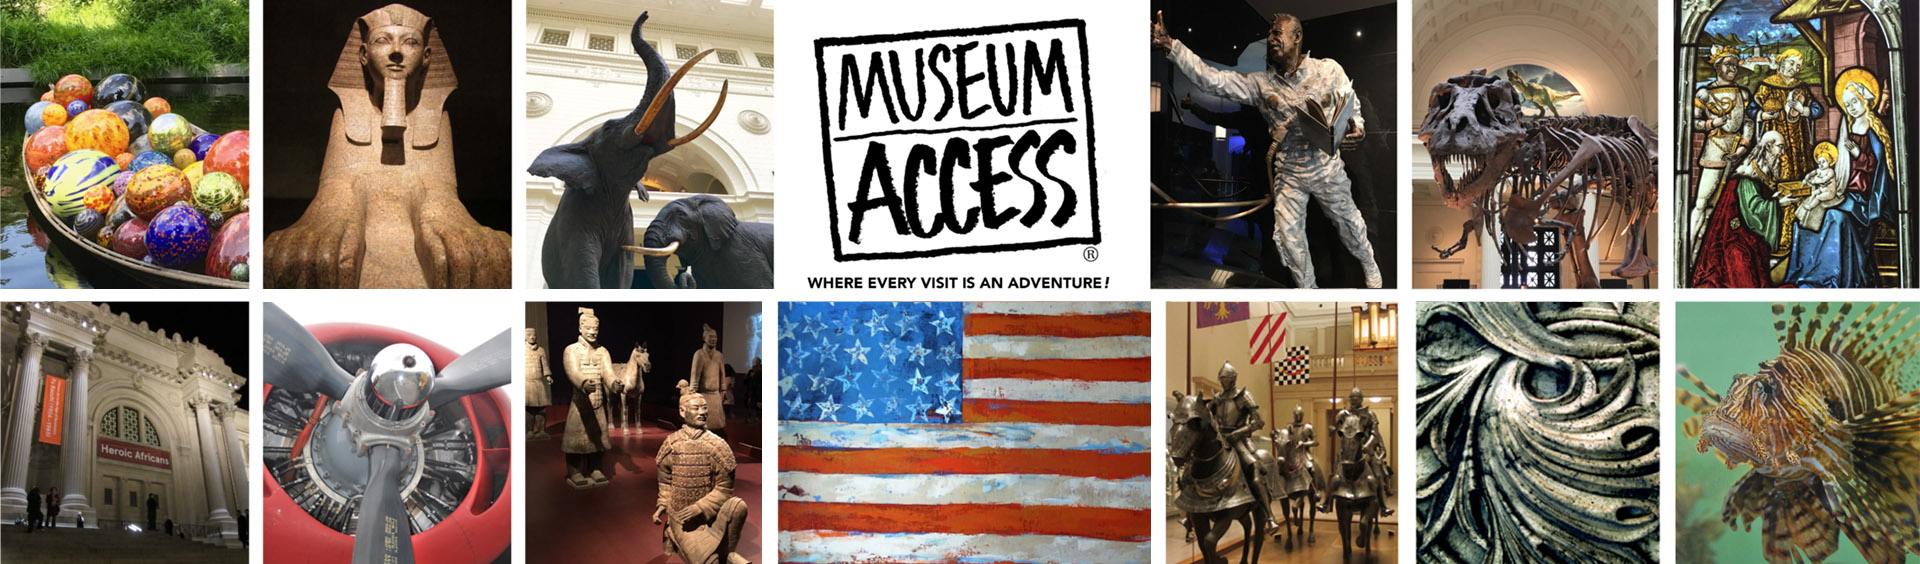 Museum Access Media